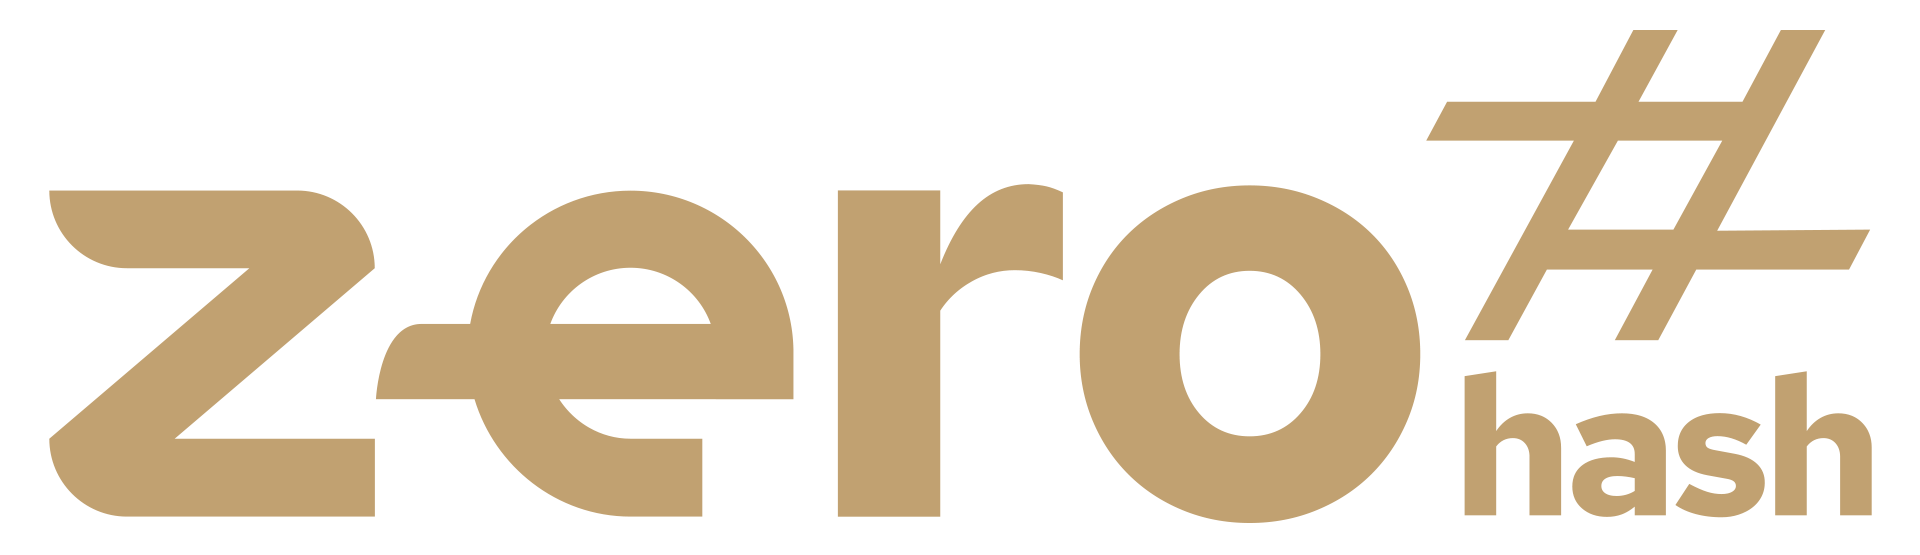 zero hash logo gold.png